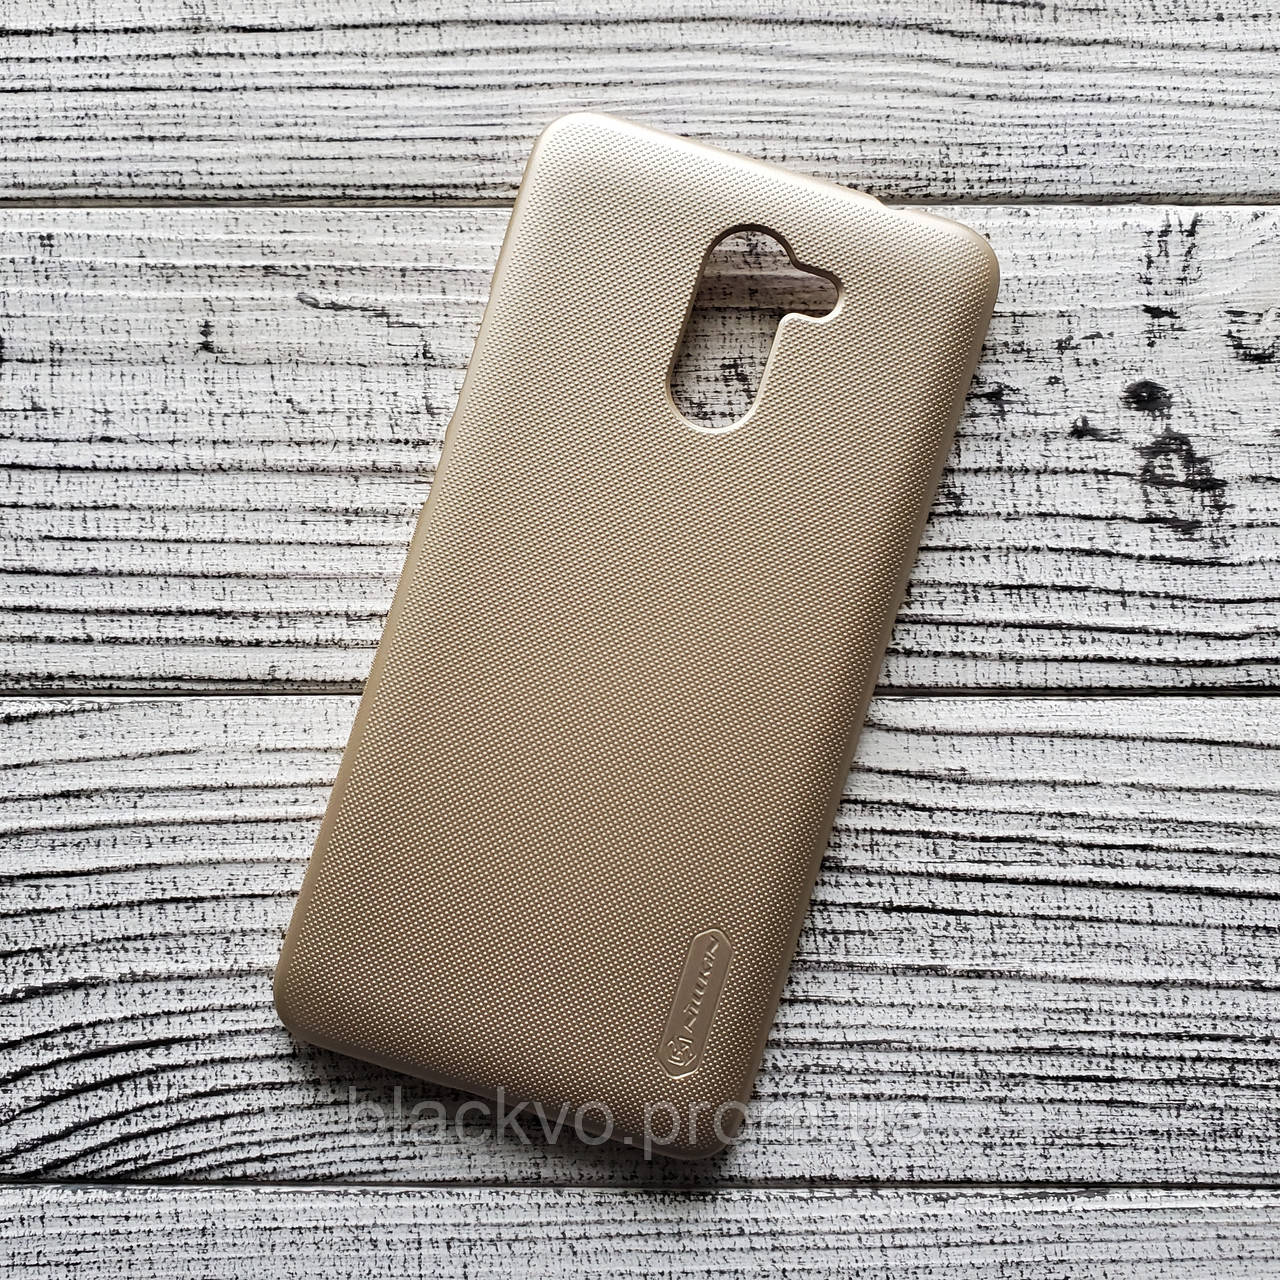 Чохол Huawei Enjoy 7 Plus TRT-AL00A для телефону NILLKIN із захисною плівкою золотистий